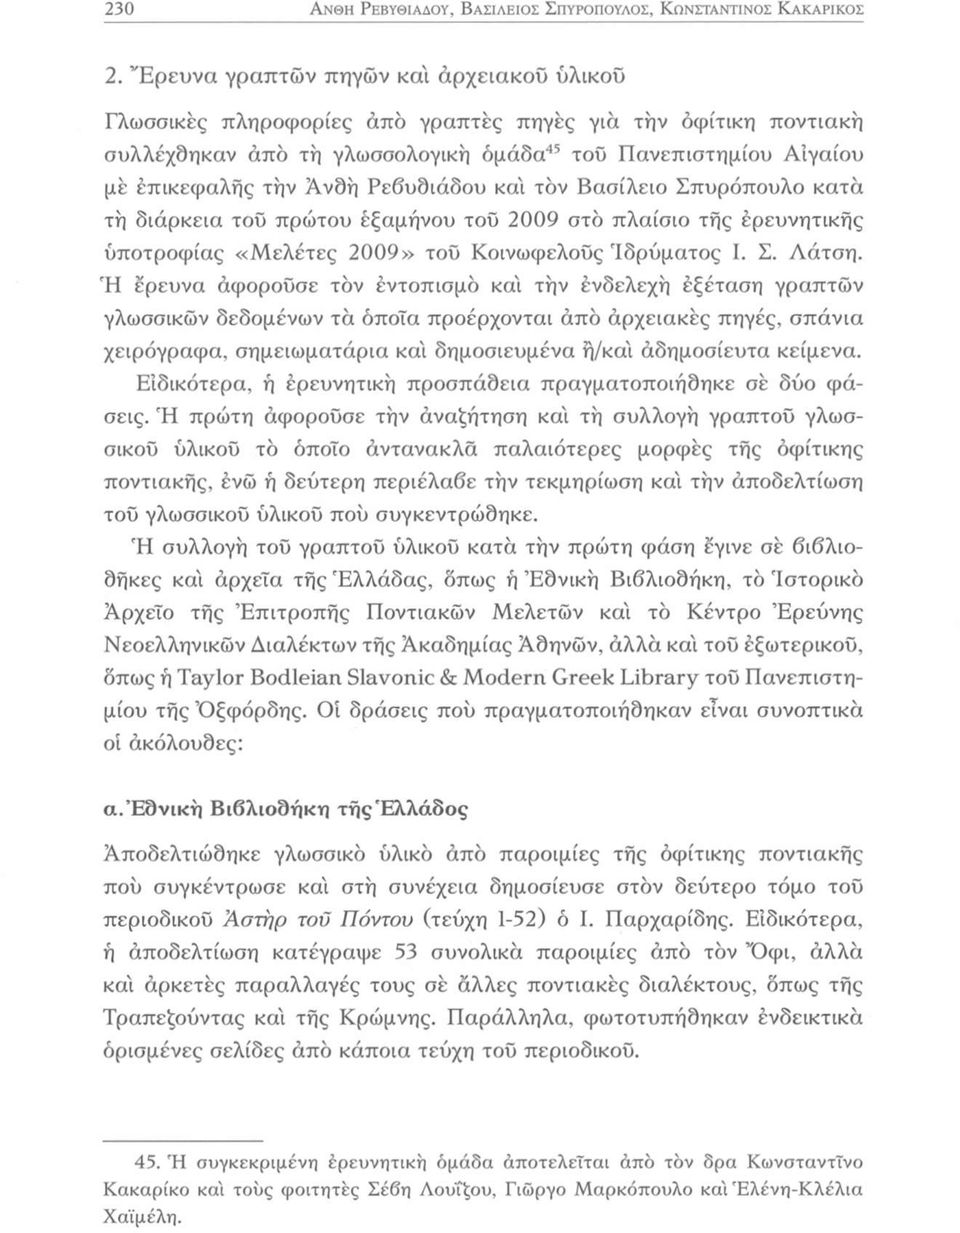 Ρεβυδιάδου κα'ι τον Βασίλειο Σπυρόπουλο κατά τη διάρκεια τοϋ πρώτου έξαμήνου του 2009 στο πλαίσιο τής έρευνητικής υποτροφίας «Μελέτες 2009» του Κοινωφελούς Ιδρύματος I. Σ. Λάτση.